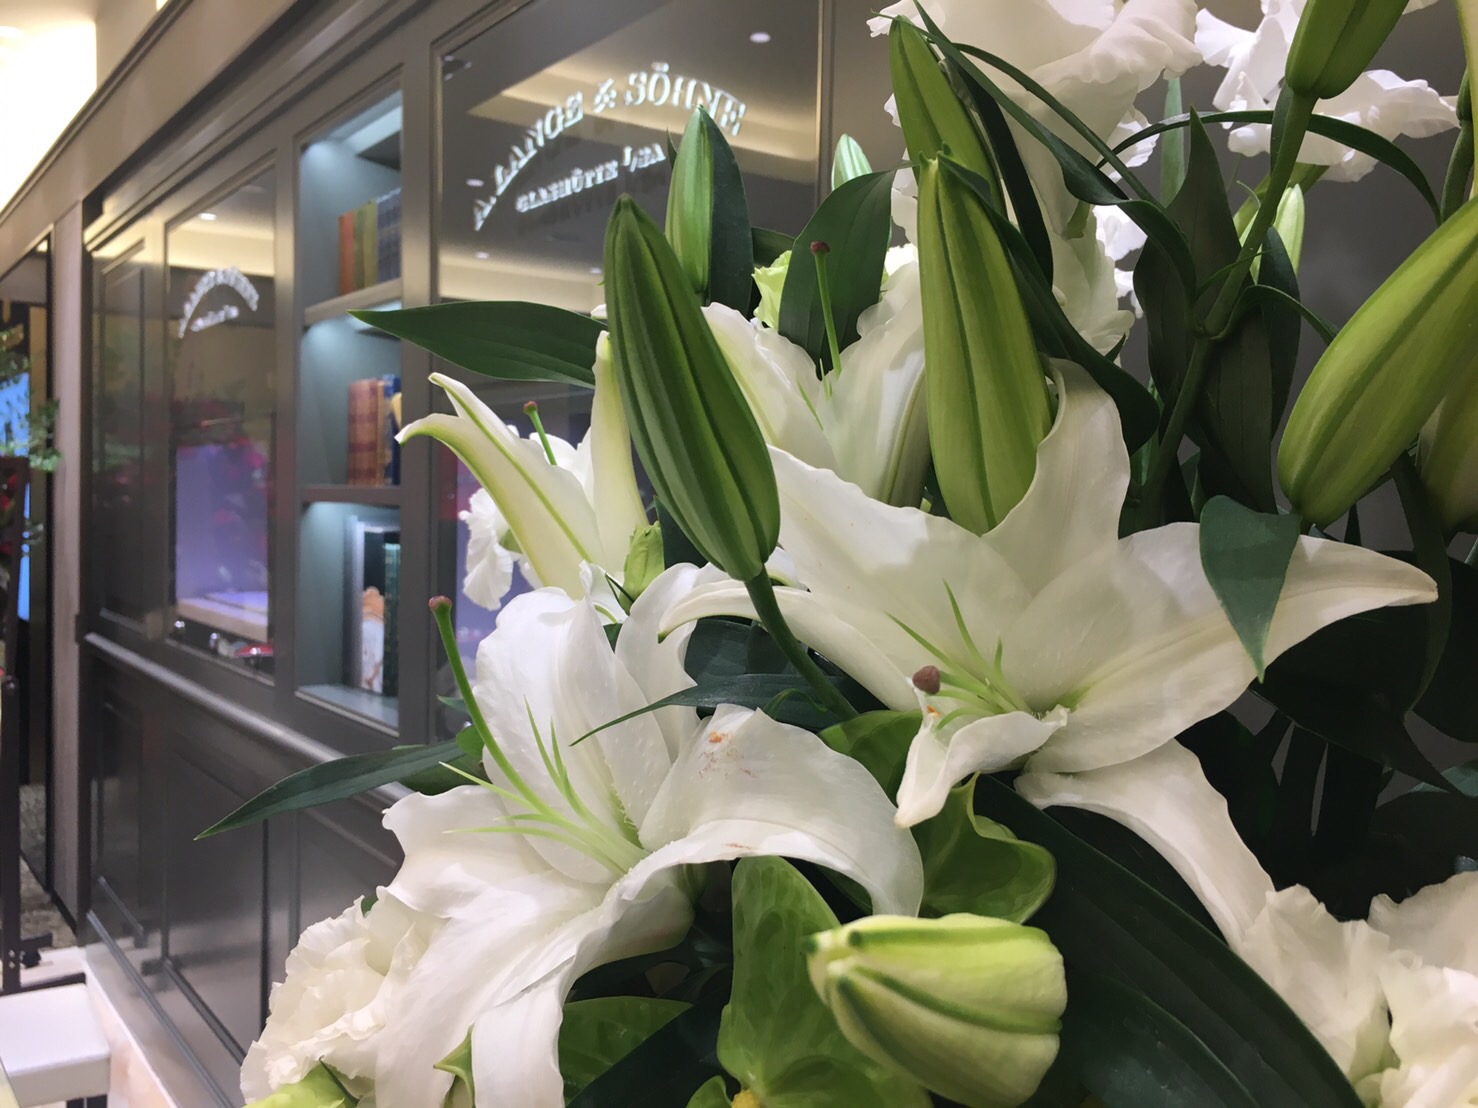 たくさんの開店祝いのお花、ありがとうございました。